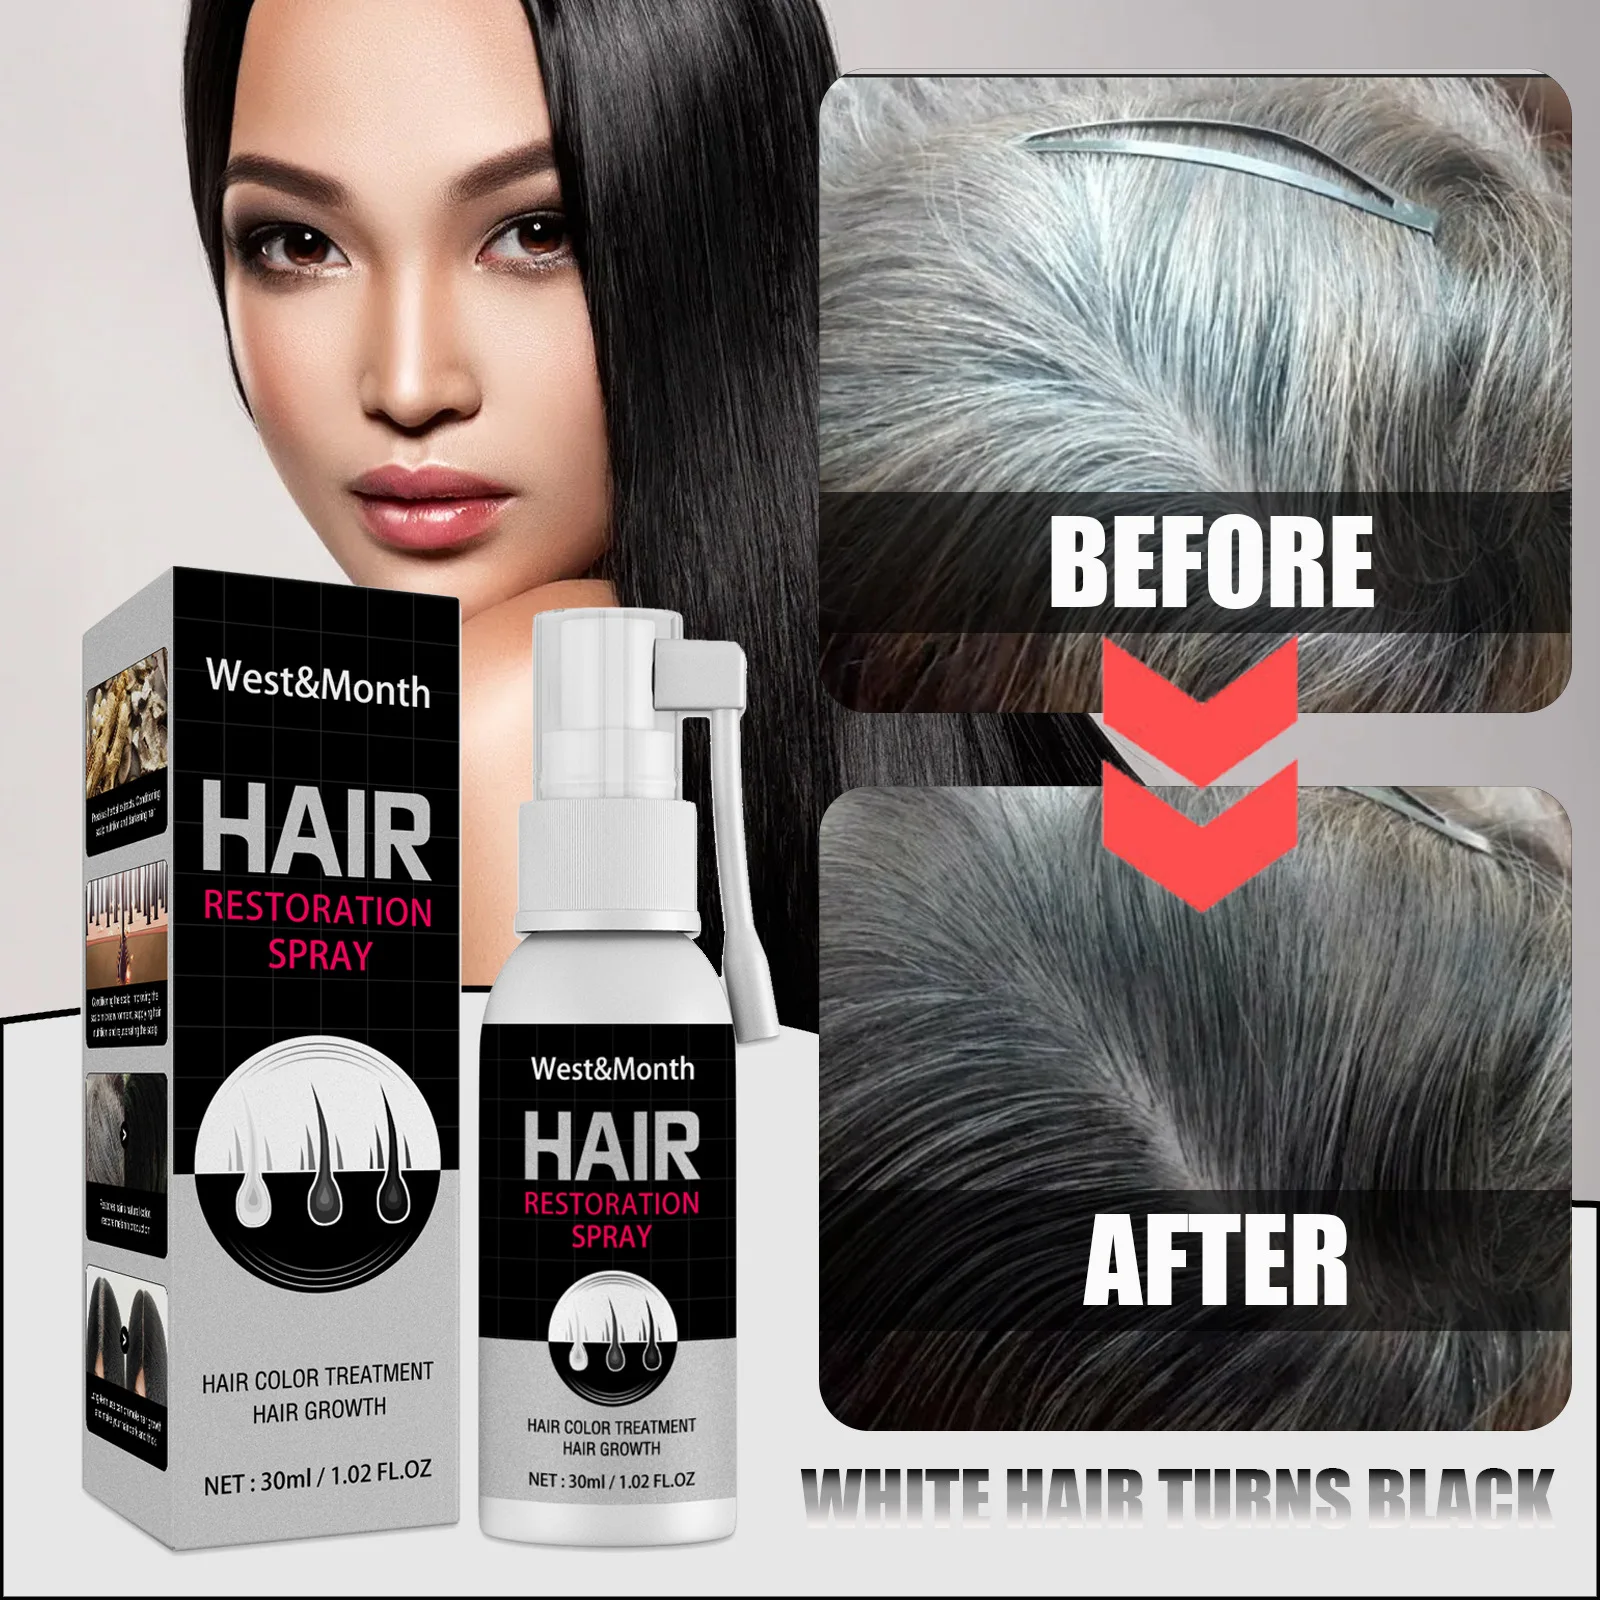 

Сыворотка против белых волос-средство для лечения седых волос, средство для роста черных волос, восстанавливает меланин, восстанавливает выпадение волос, восстанавливает поврежденное масло для ухода